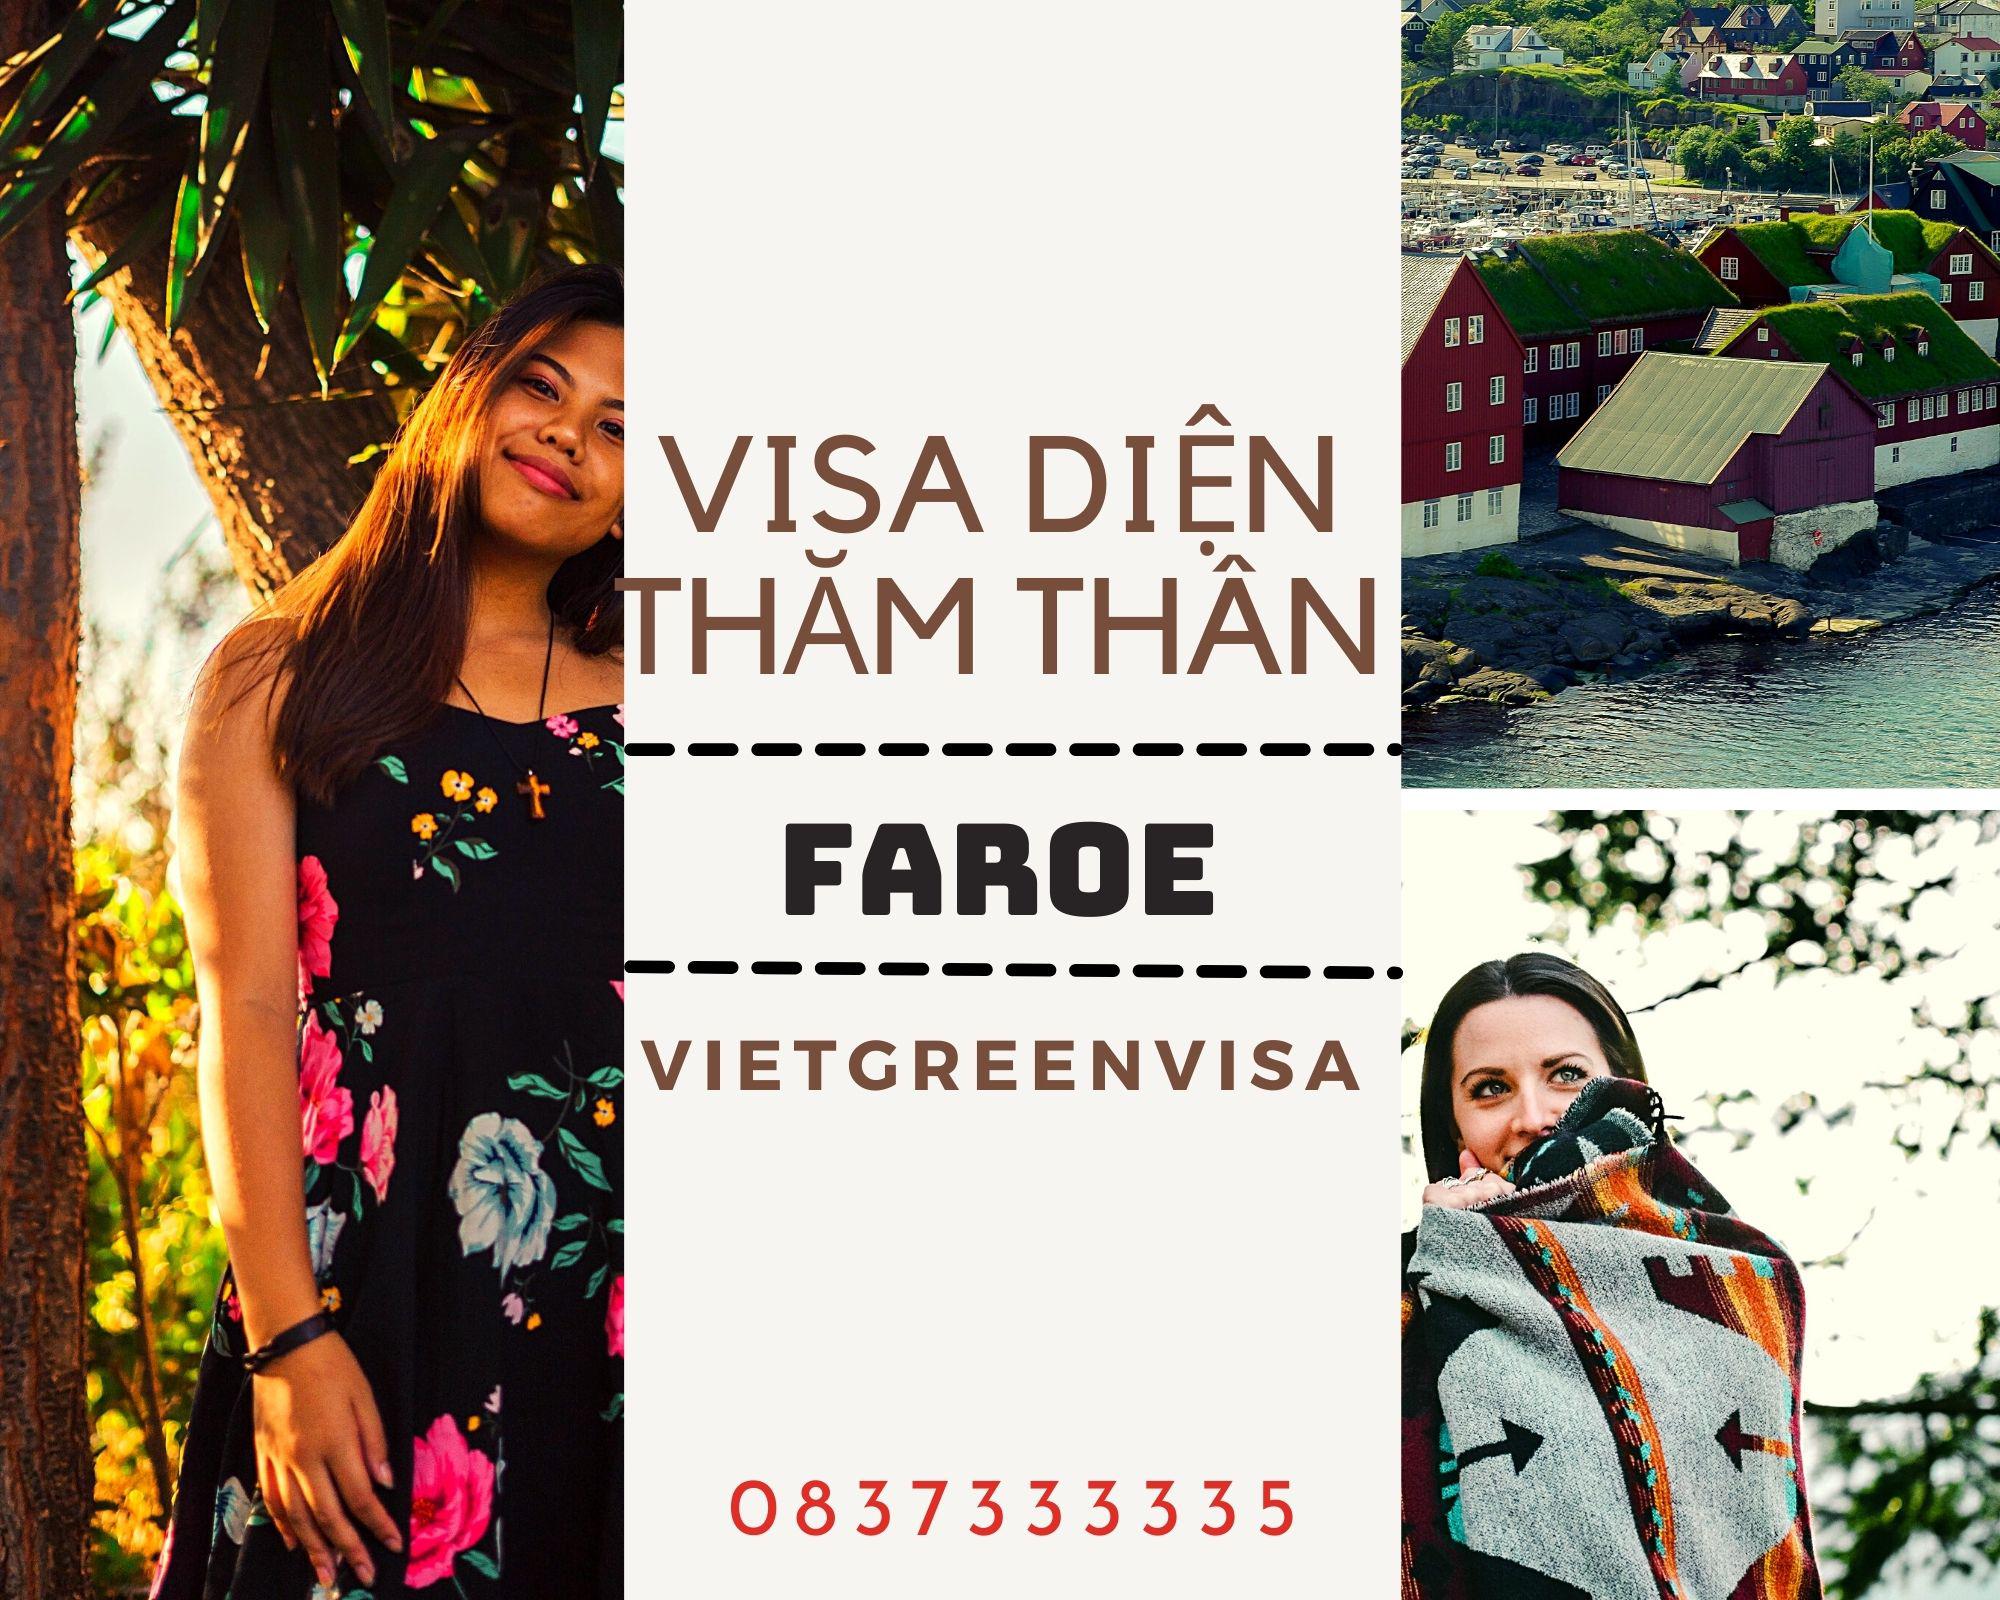 Dịch vụ visa đi Faroe diện thăm thân trọn gói, uy tín